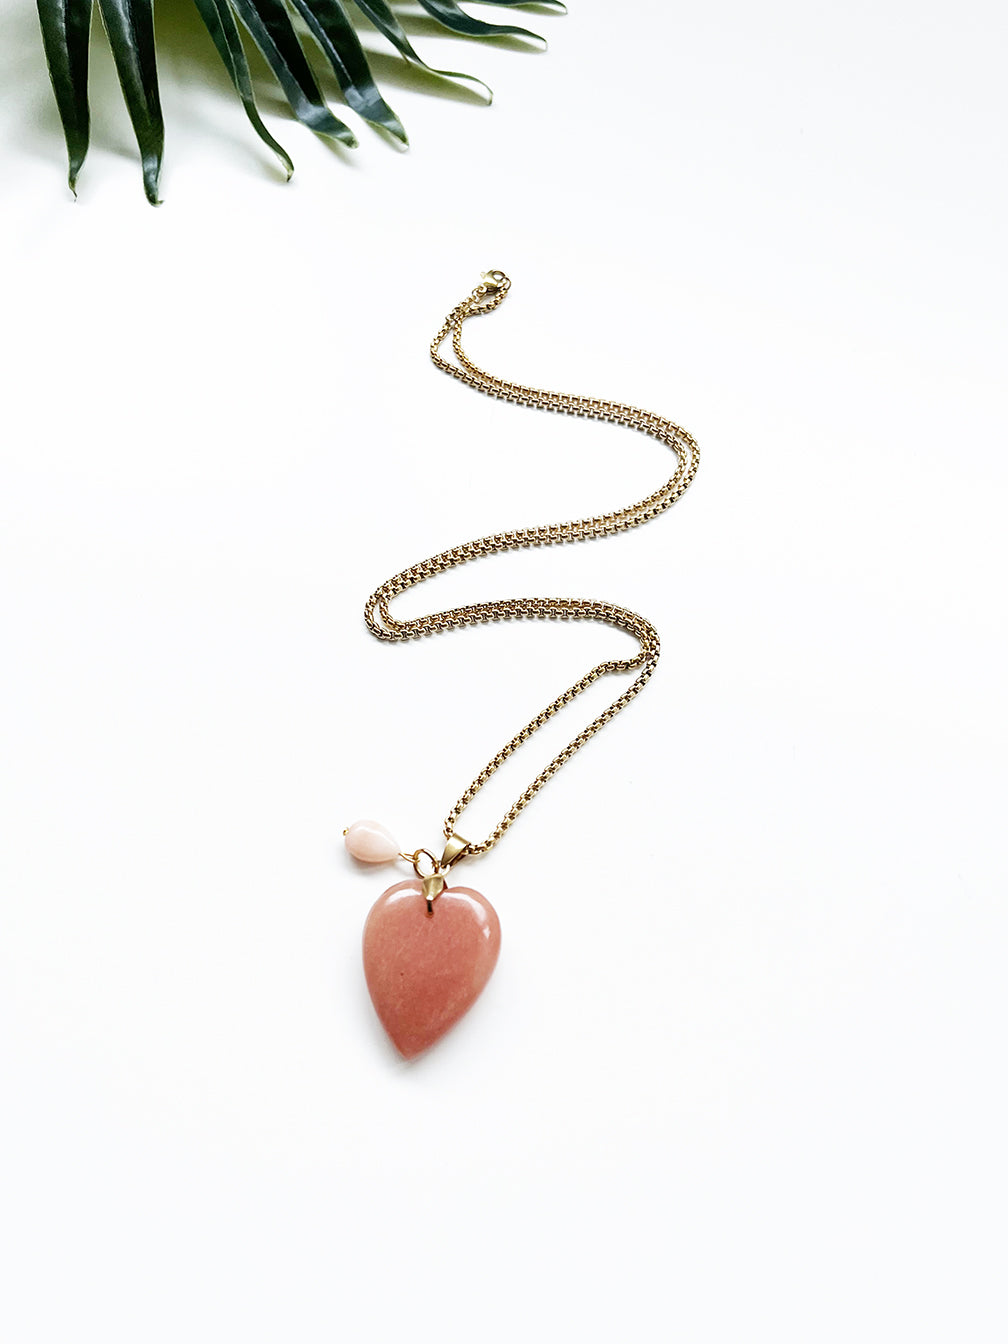 touchstone necklace - peach aventurine